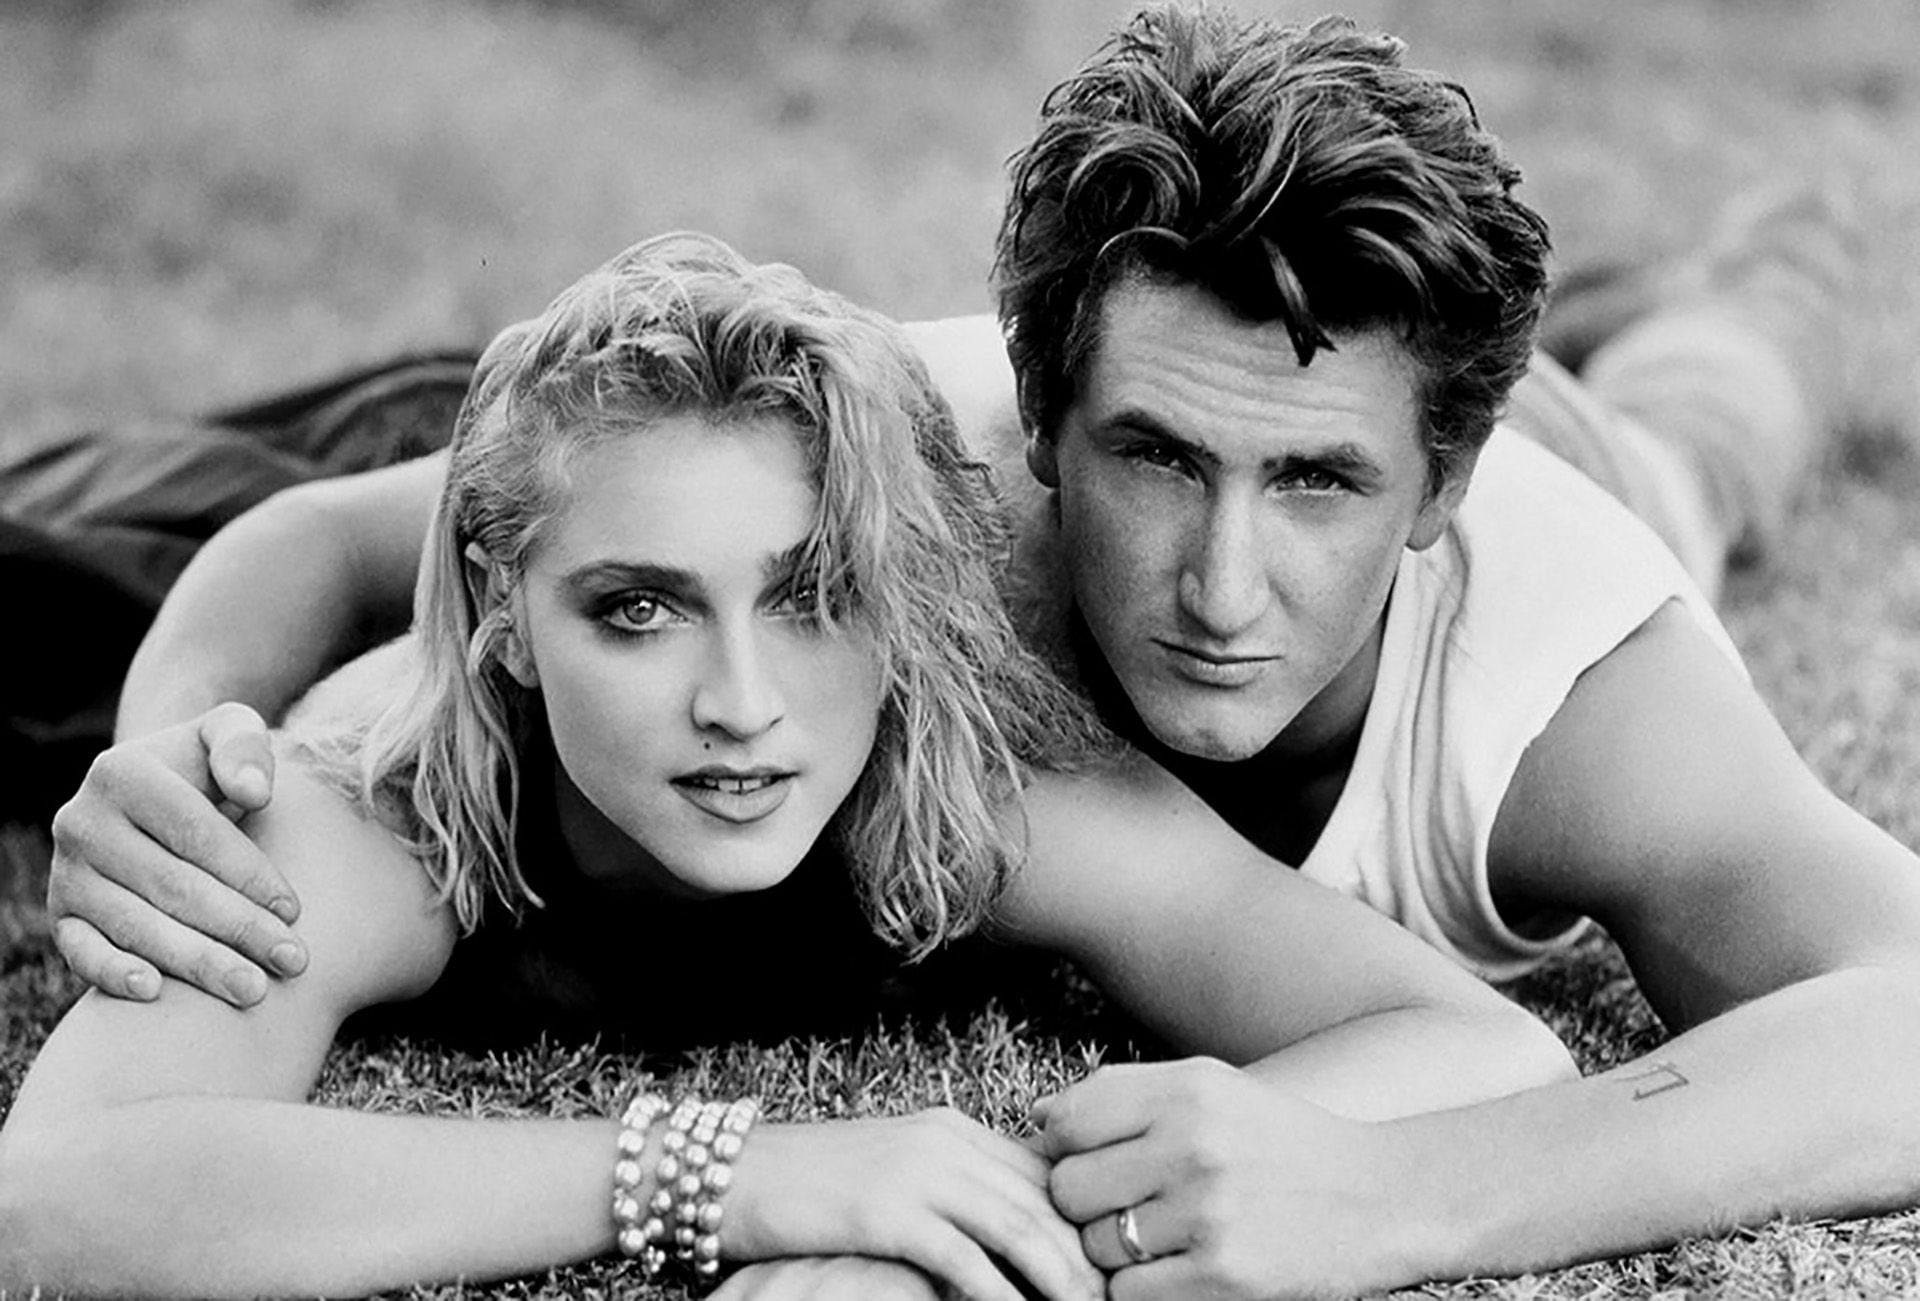 En 1985 se casó con Madonna, de la que se divorció en 1989 tras cuatro años de tumultuosa relación que los llevó a estar décadas sin hablarse